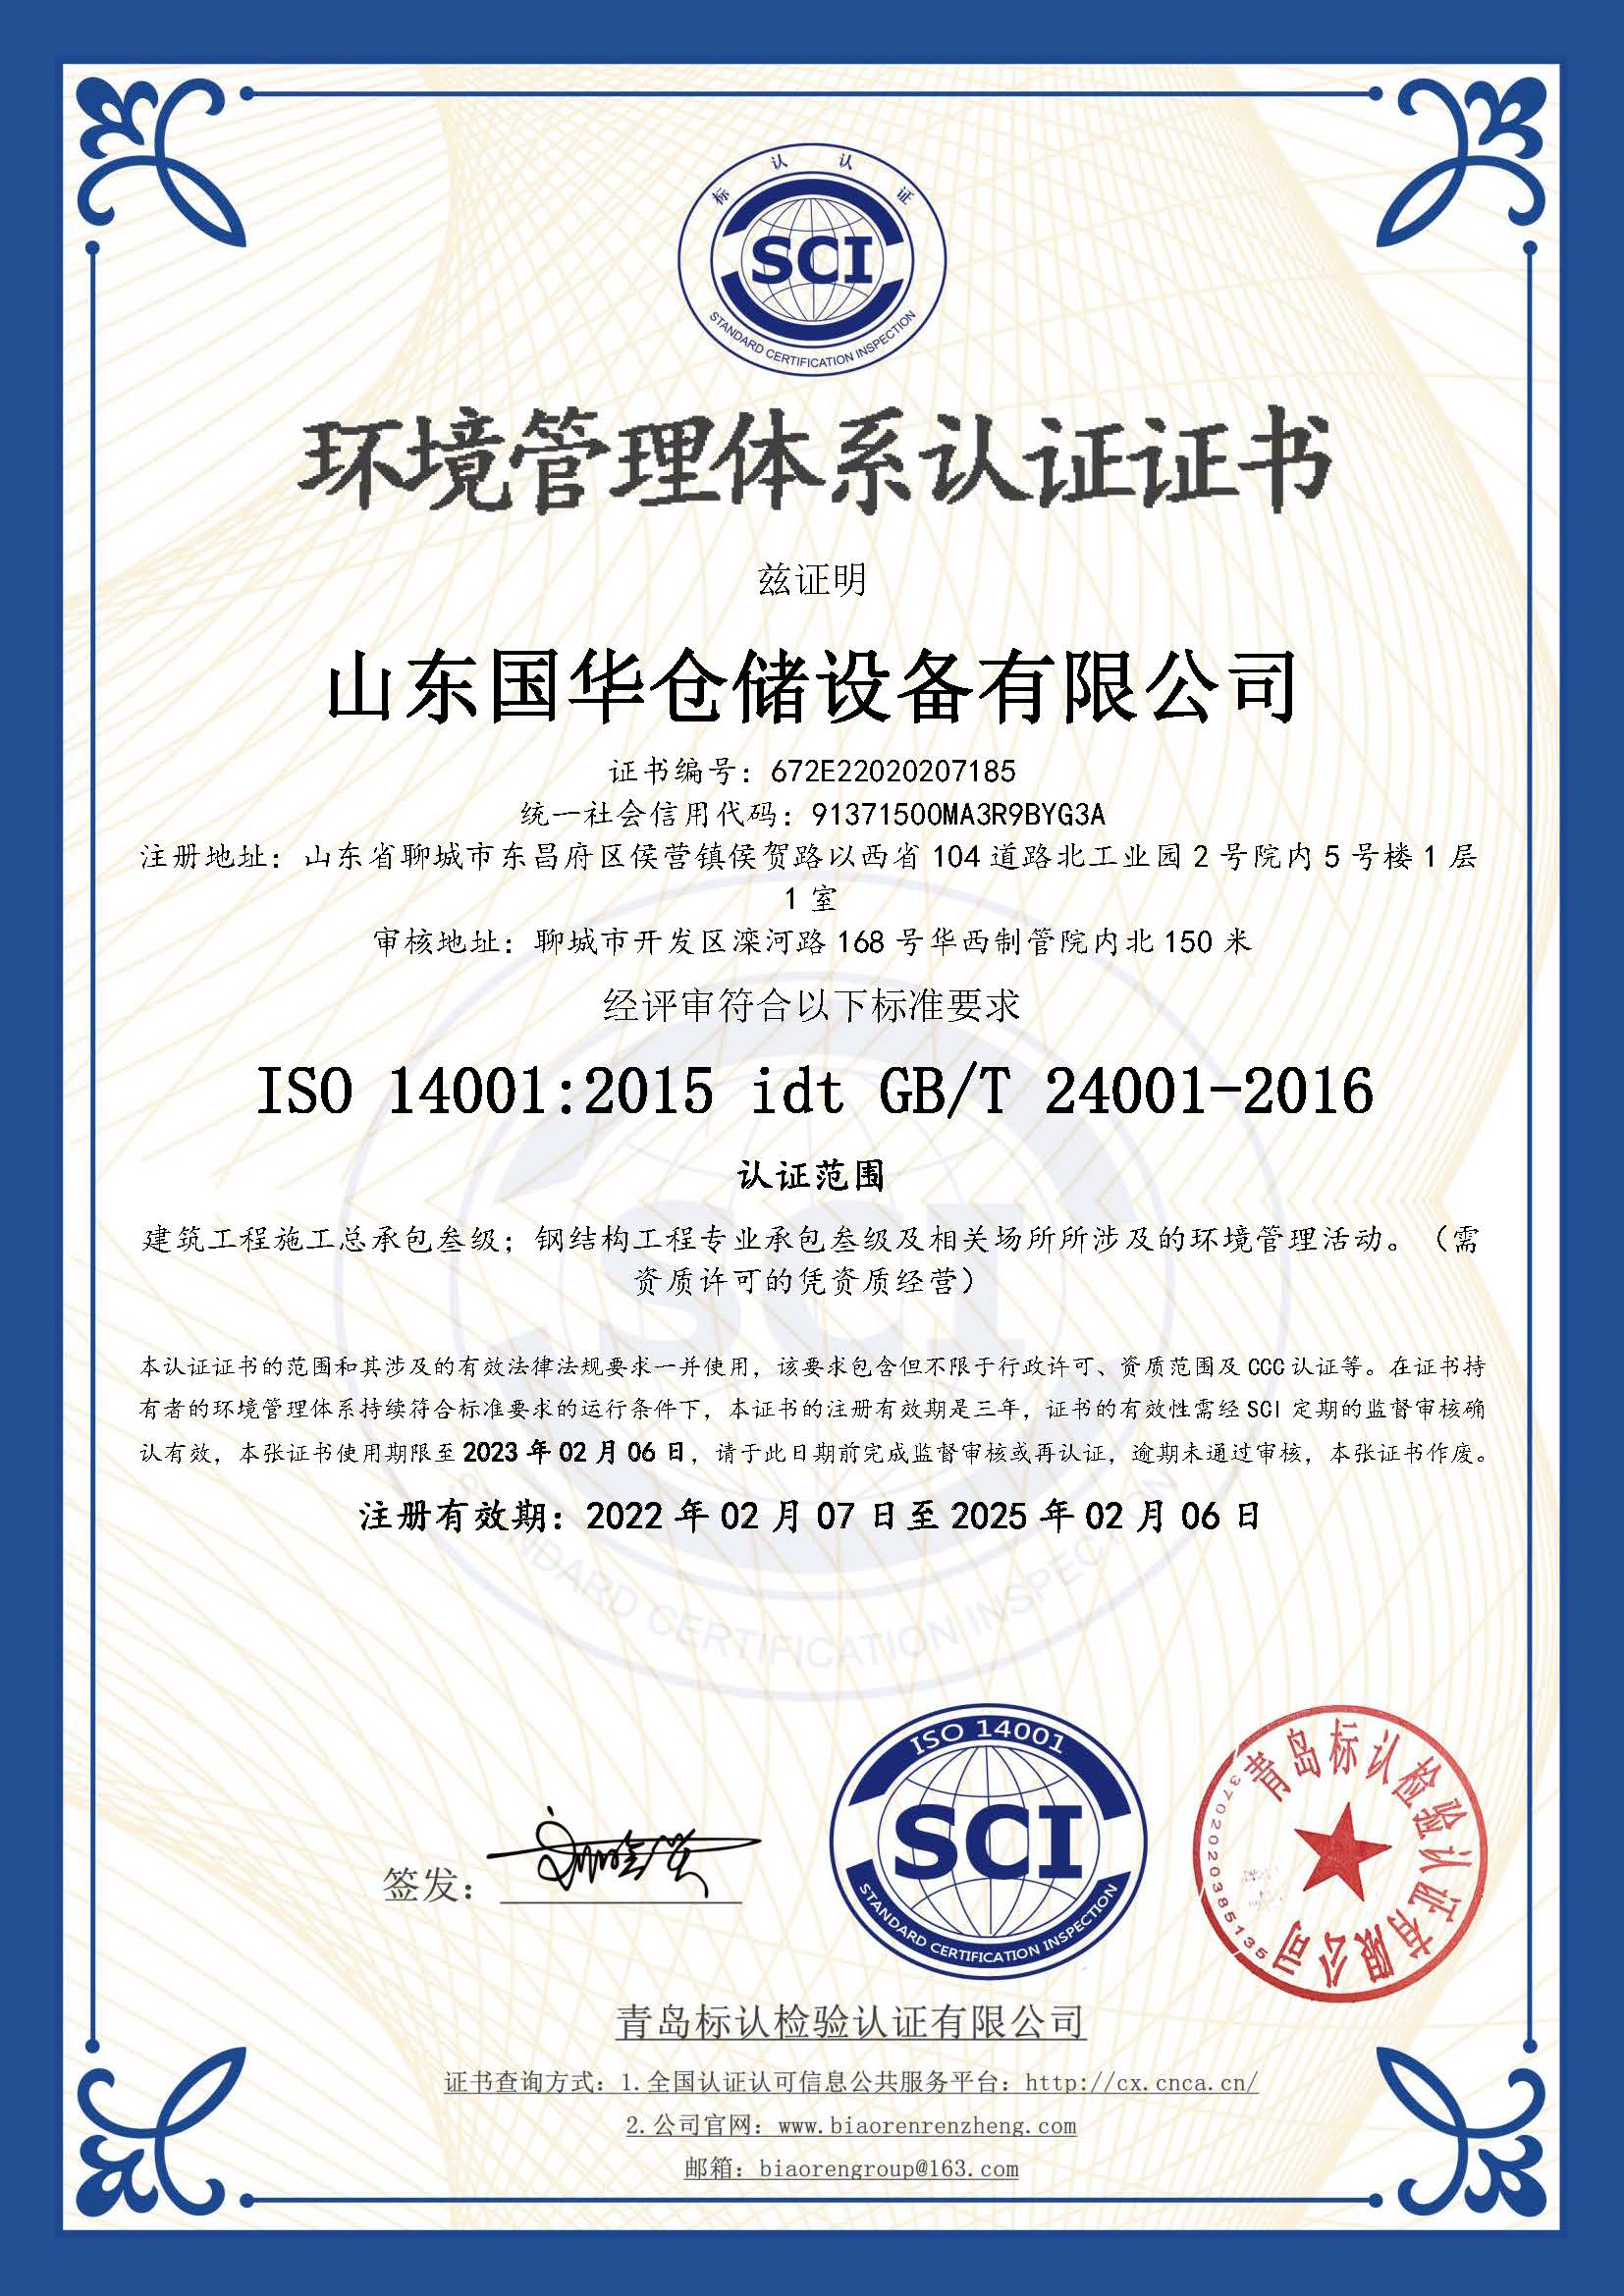 昆明钢板仓环境管理体系认证证书